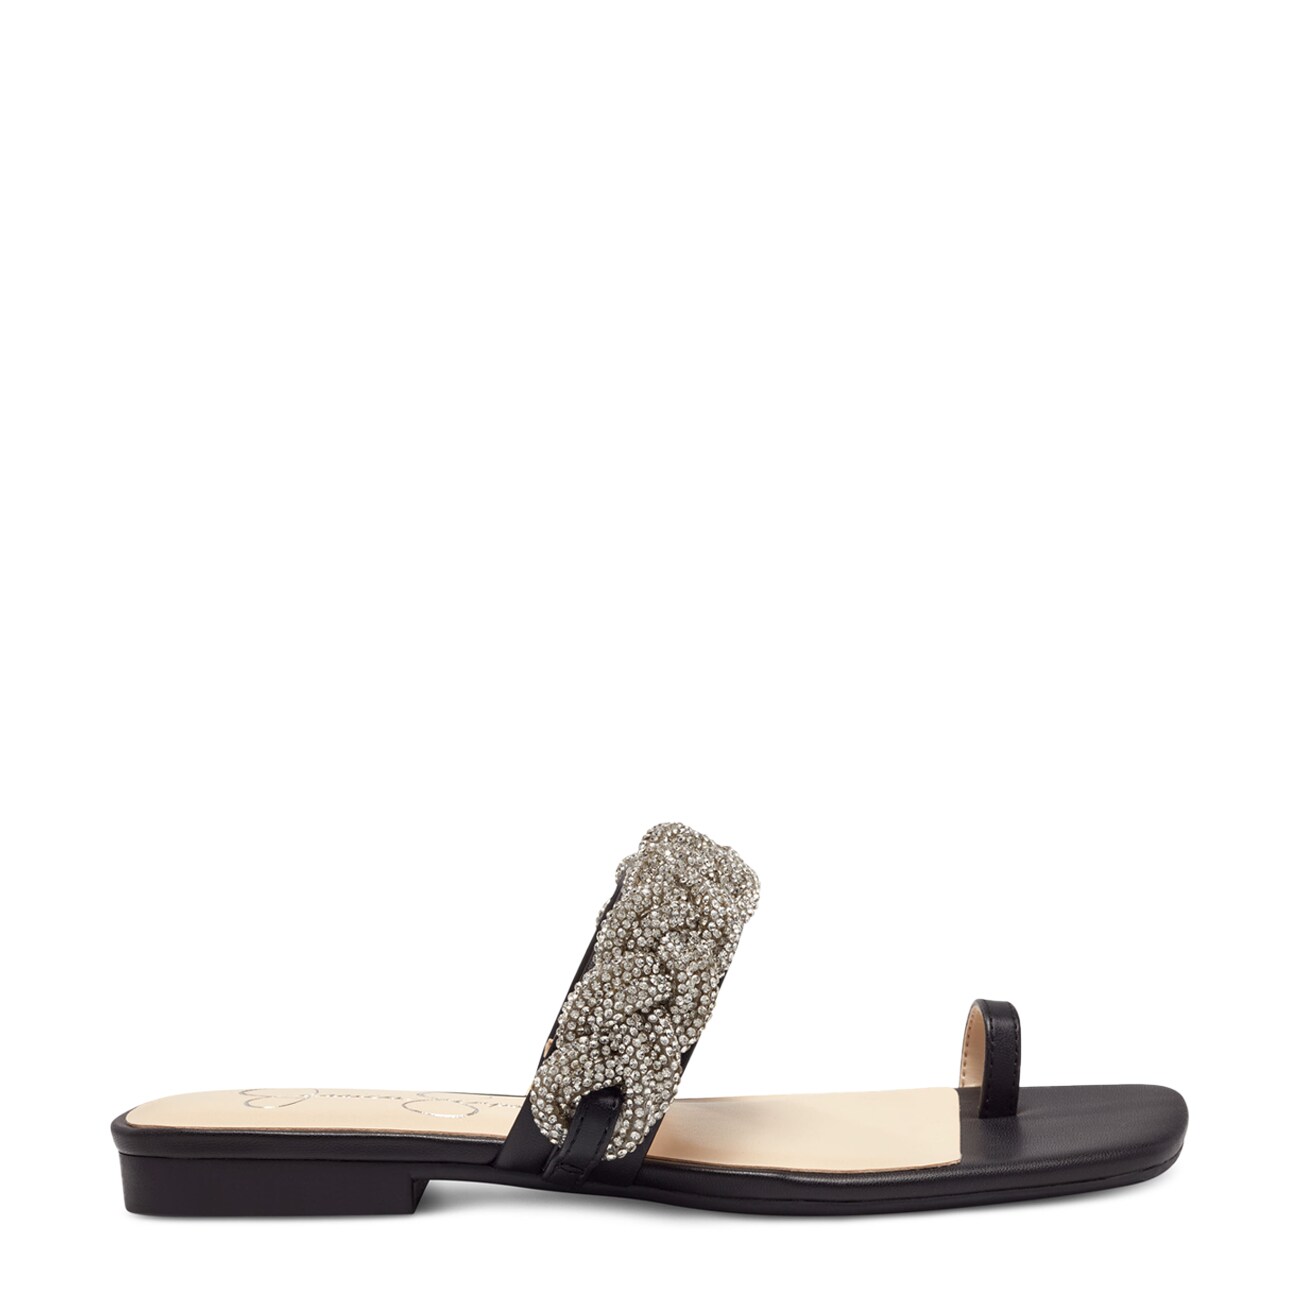 Jessica Simpson Rowine Sandal | The Shoe Company